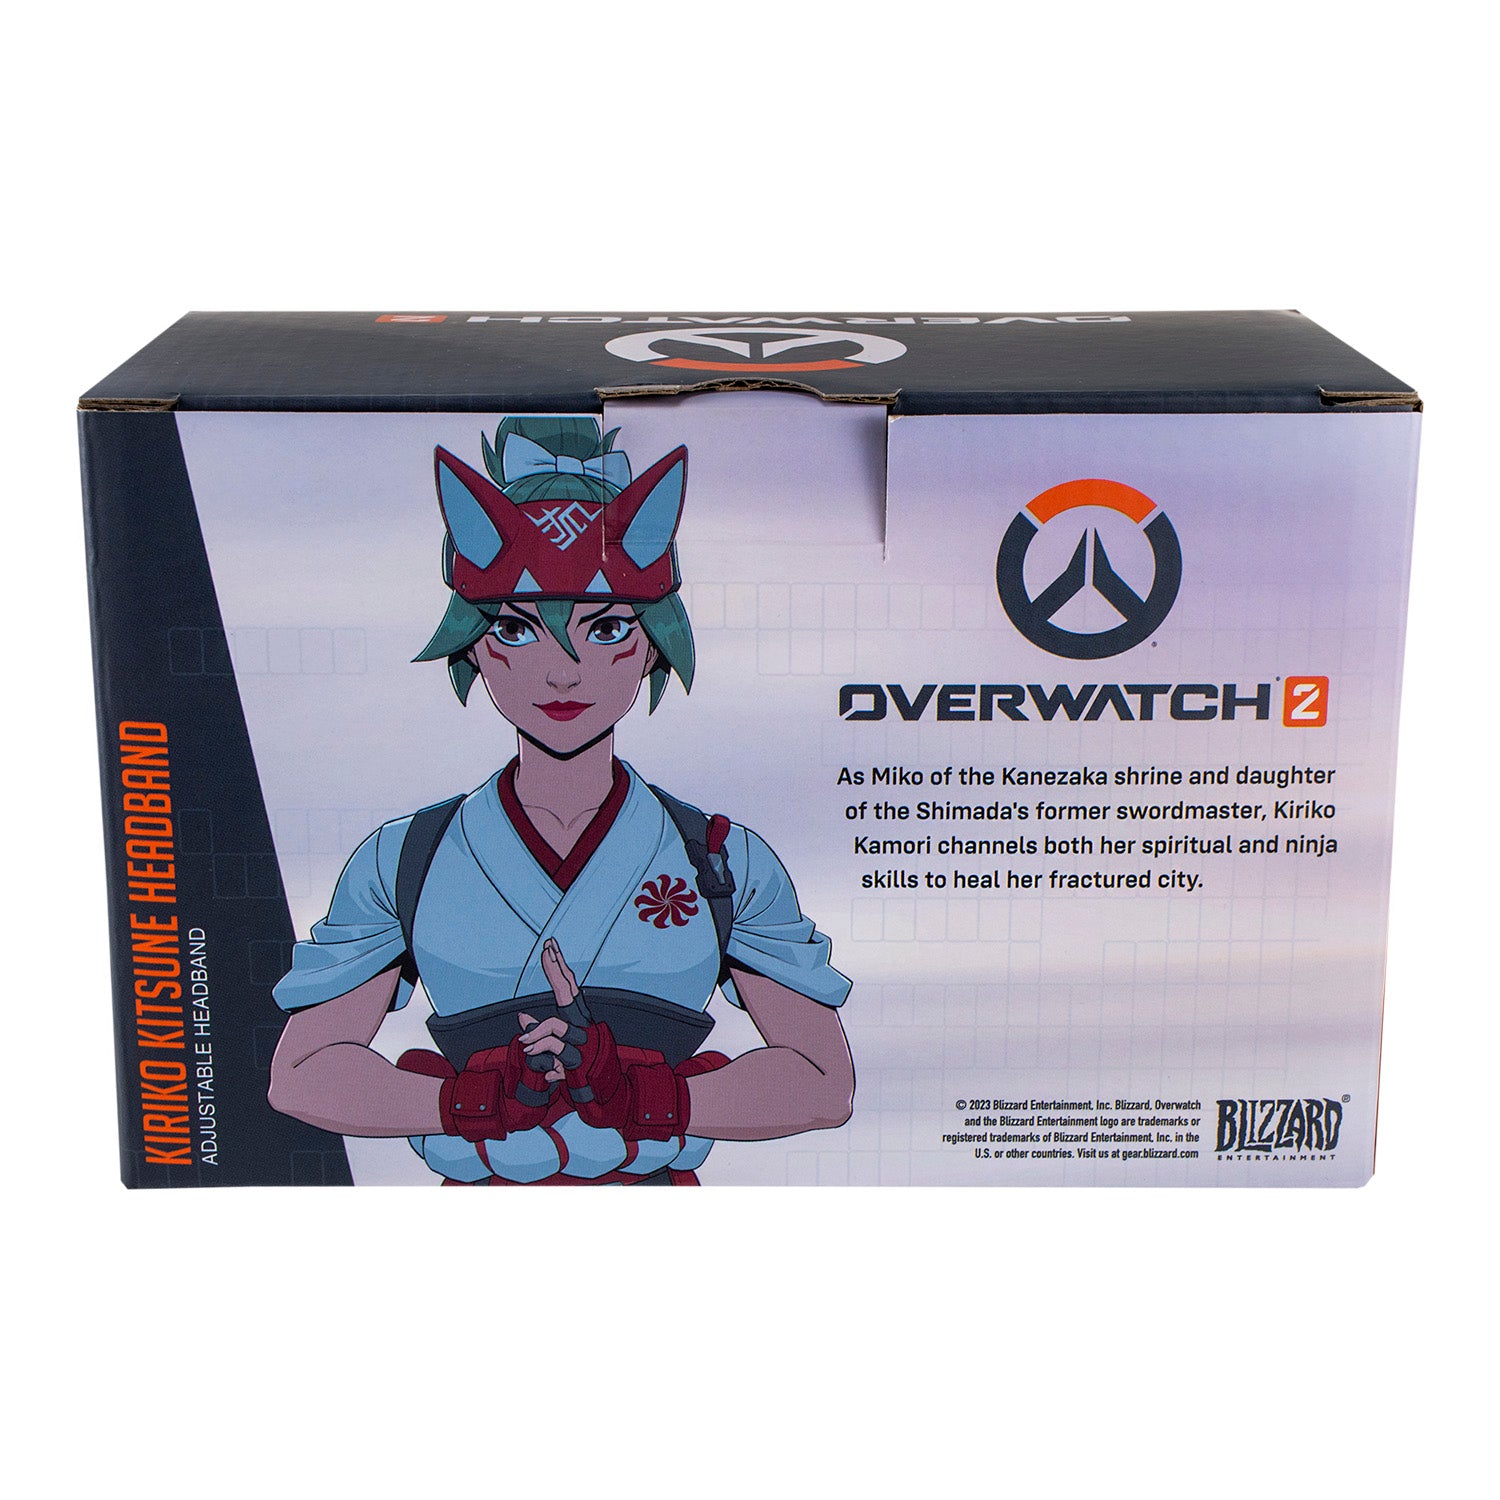 Overwatch 2 Kiriko Kitsune Headband - Back View Packaging